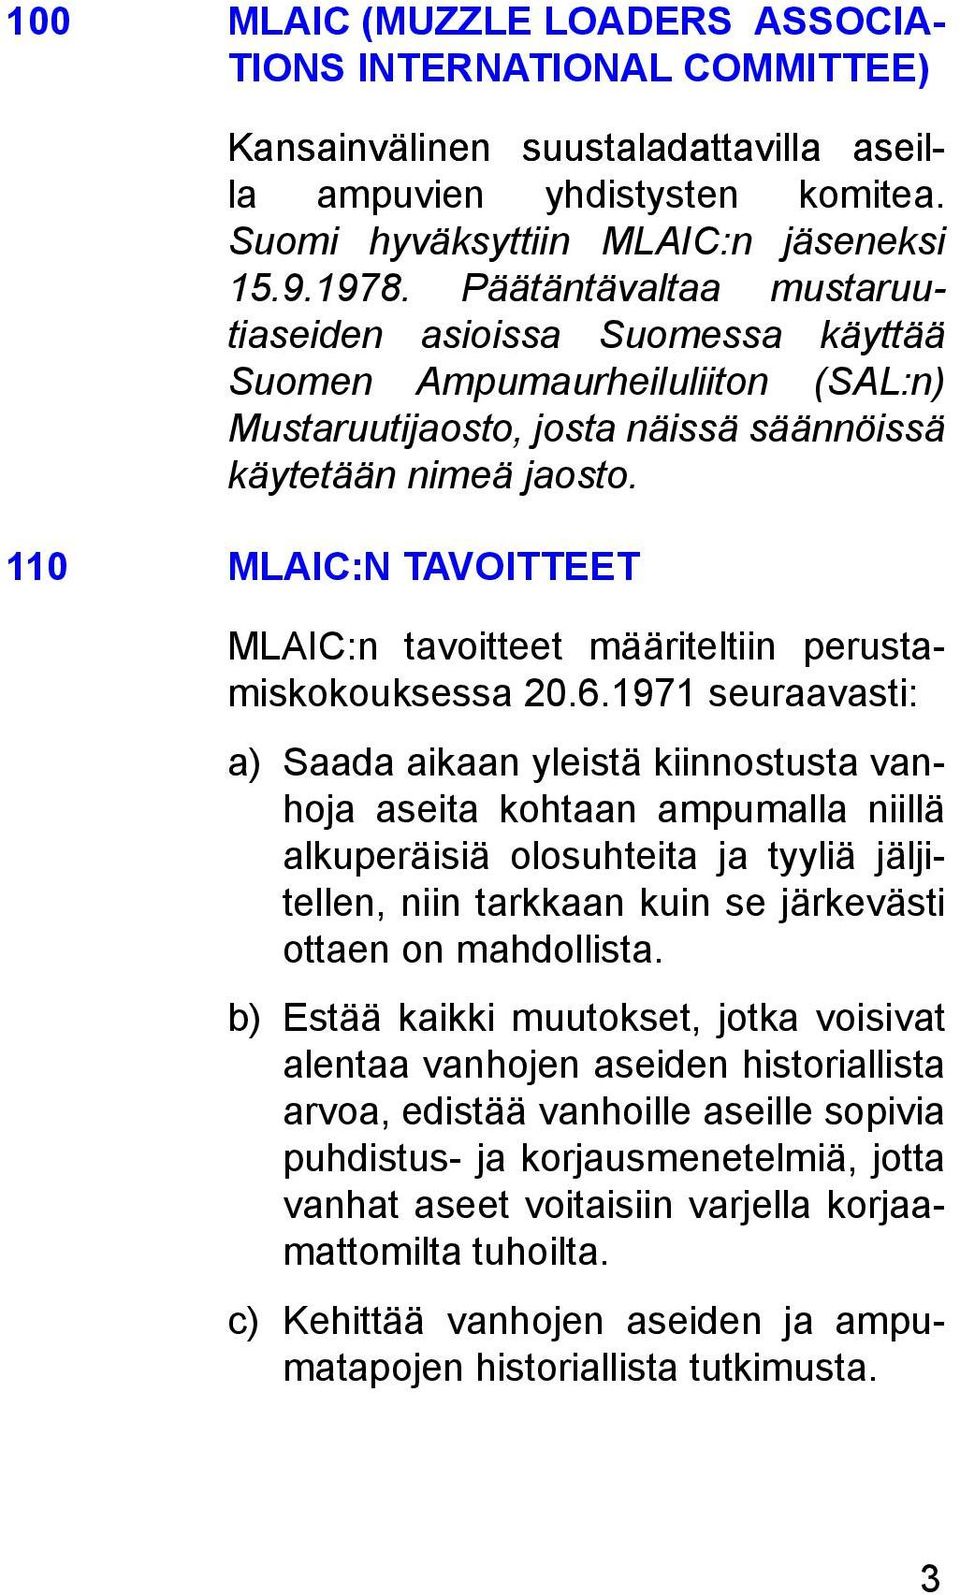 110 MLAIC:N TAVOITTEET MLAIC:n tavoitteet määriteltiin perustamiskokouksessa 20.6.